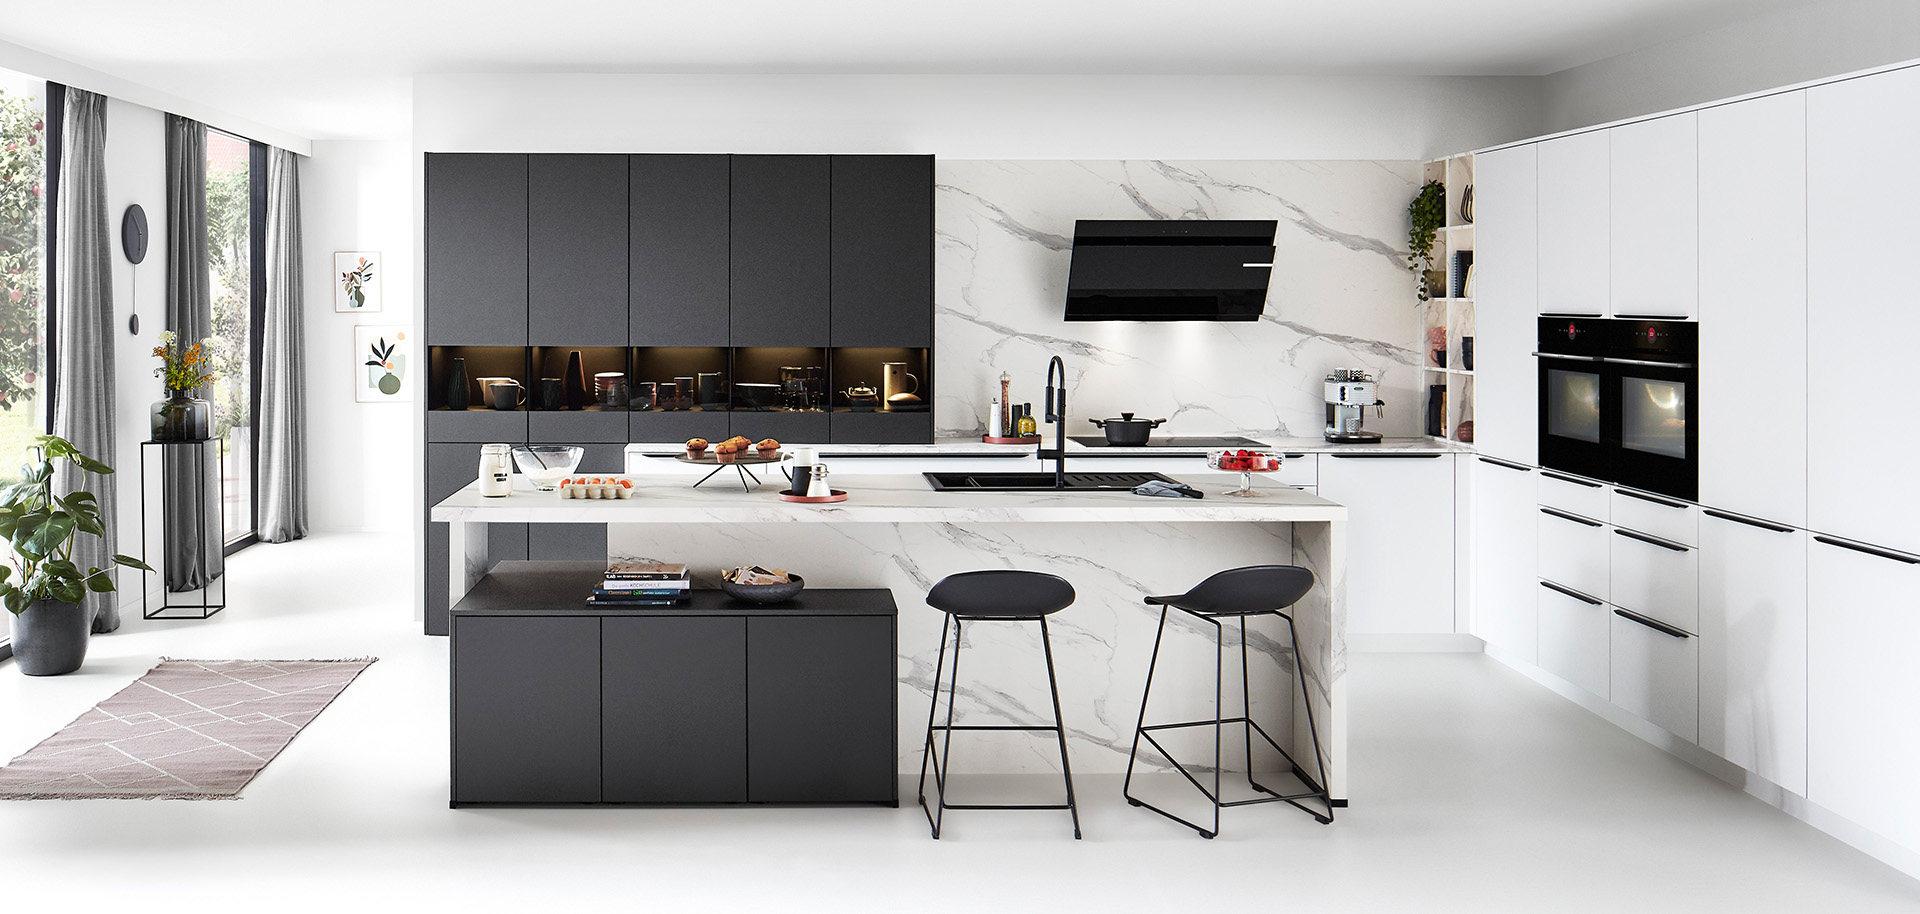 Moderne Küche mit klaren Linien, die weiße Schränke, schwarze Akzente, Marmor-Rückwand, integrierte Geräte und eine zentrale Insel mit Barhockersitzplätzen präsentiert.